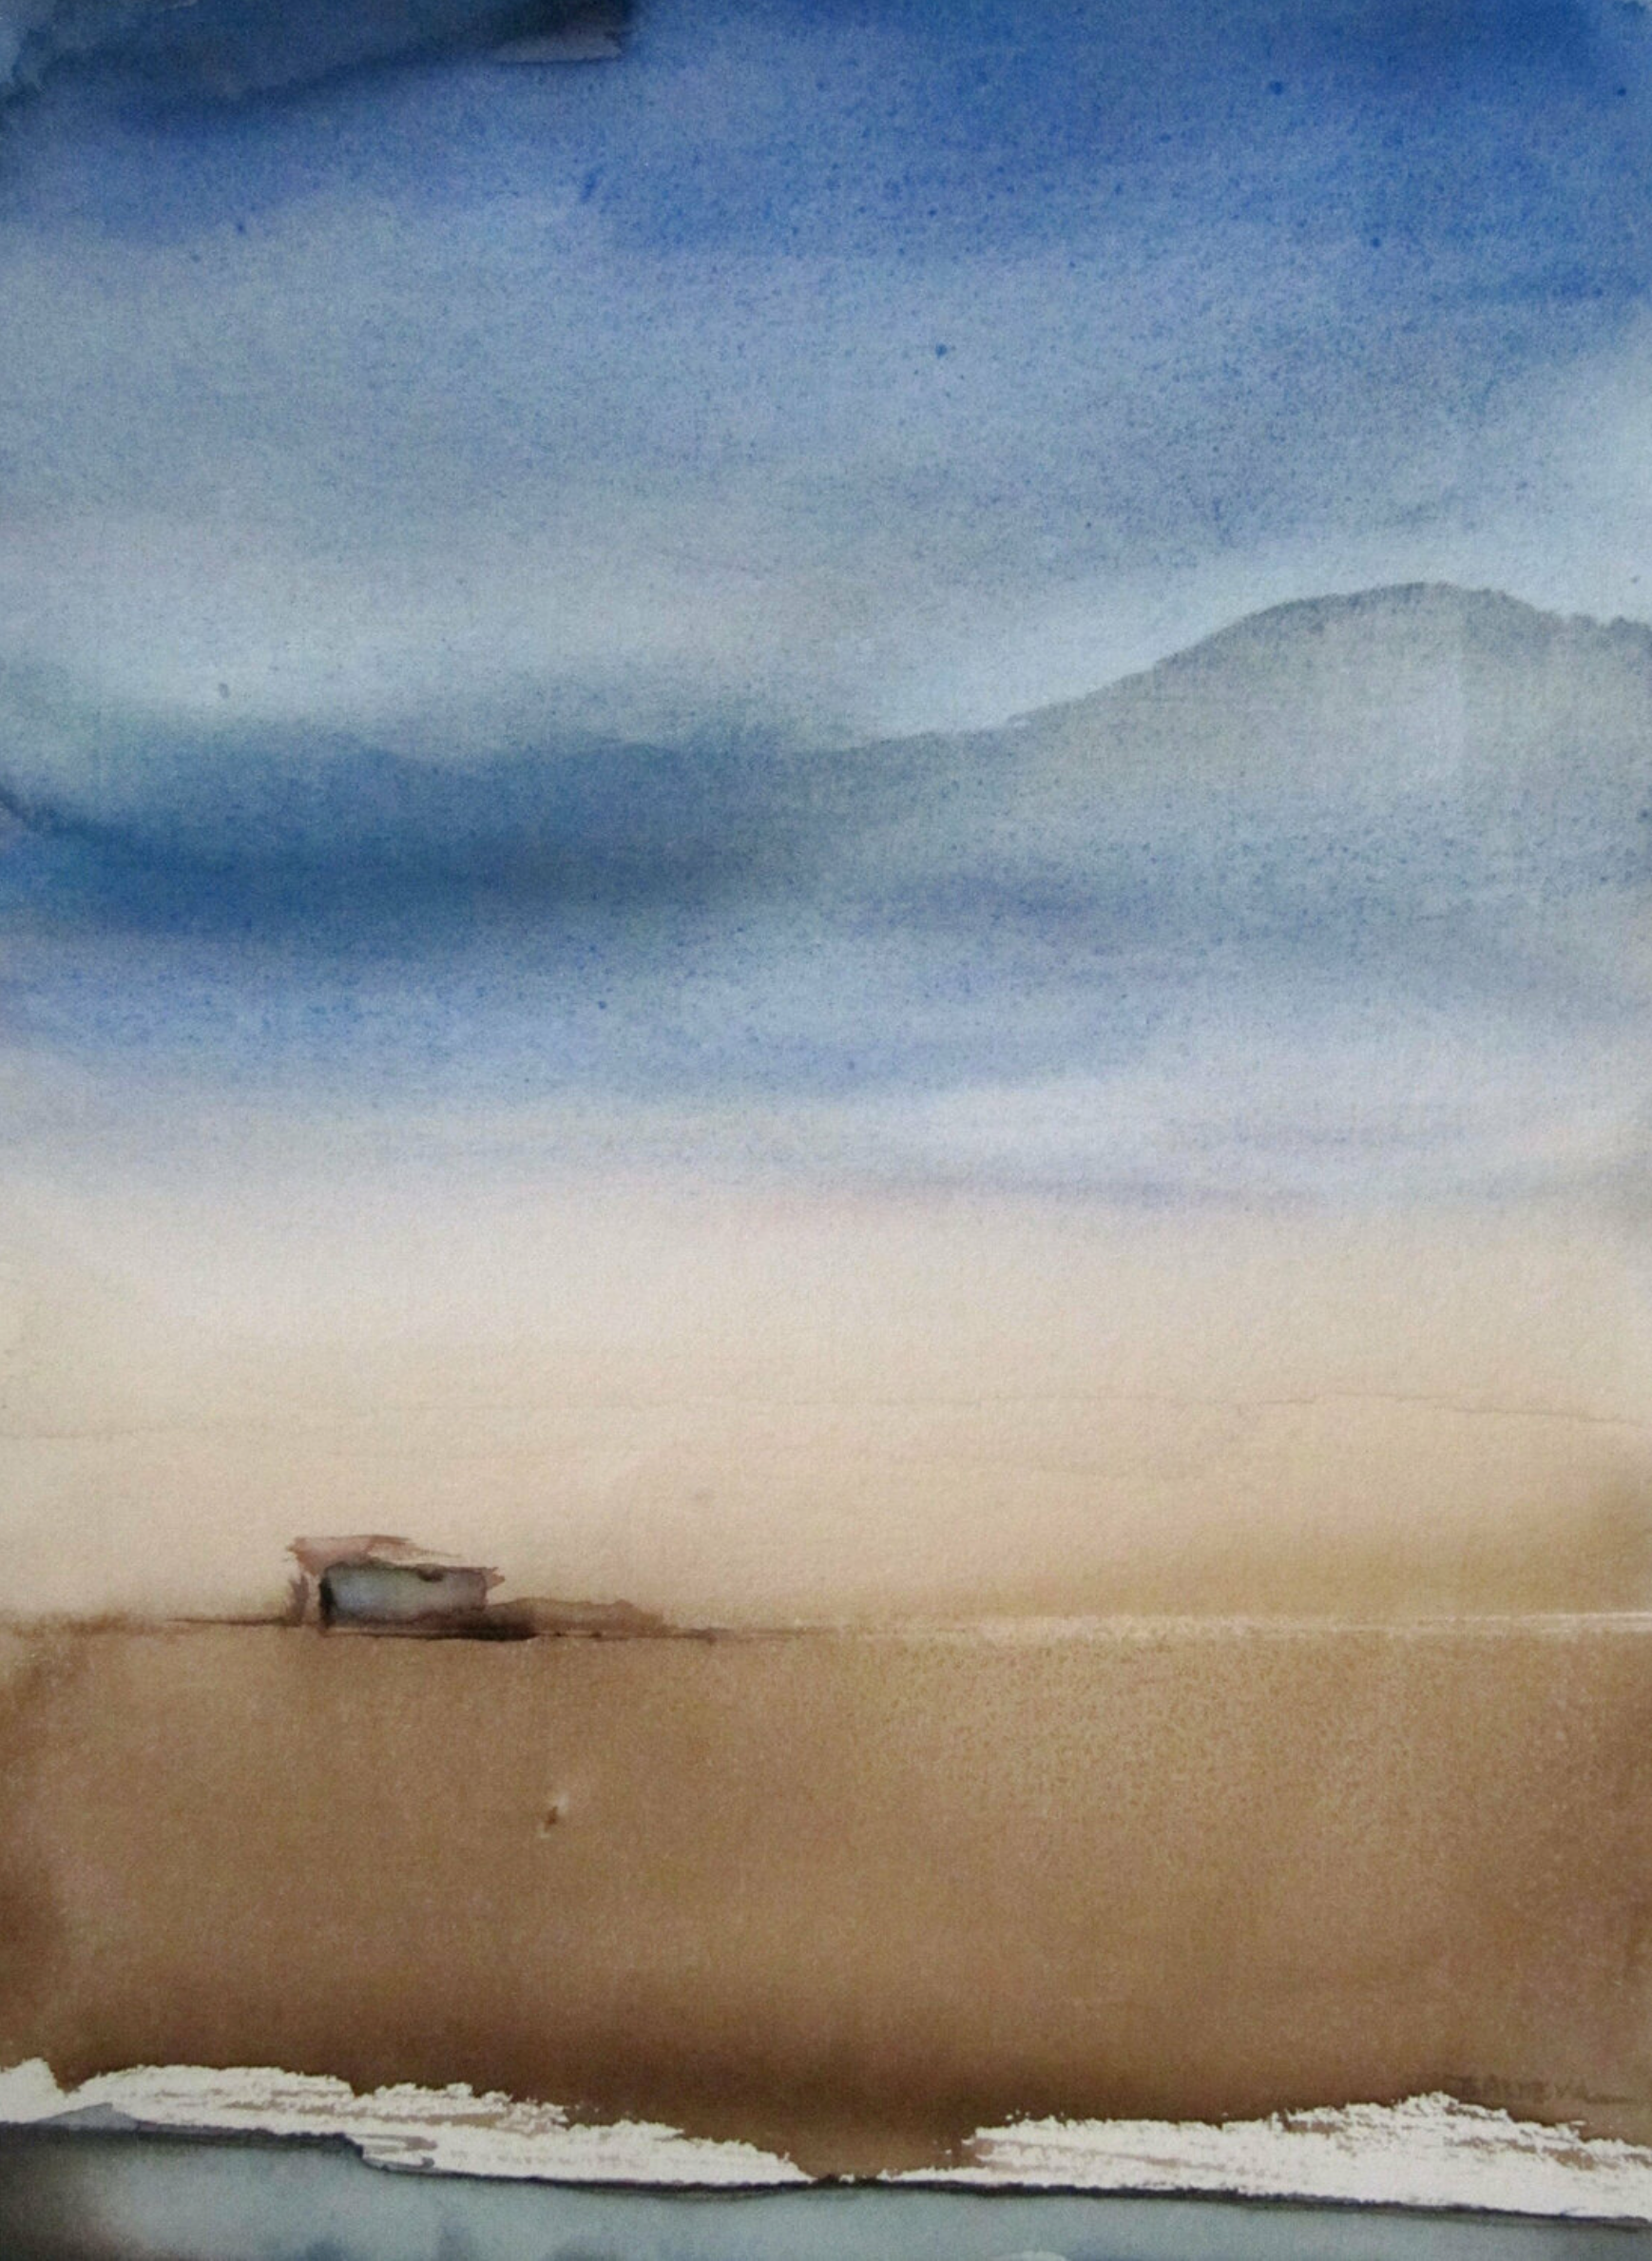 La "Ligne d'horizon" de Sylvia Baldeva montre un paysage, un désert, une maison, une campagne et un ciel Aquarelle sur papier Canson®. Couleur bleu et brun.